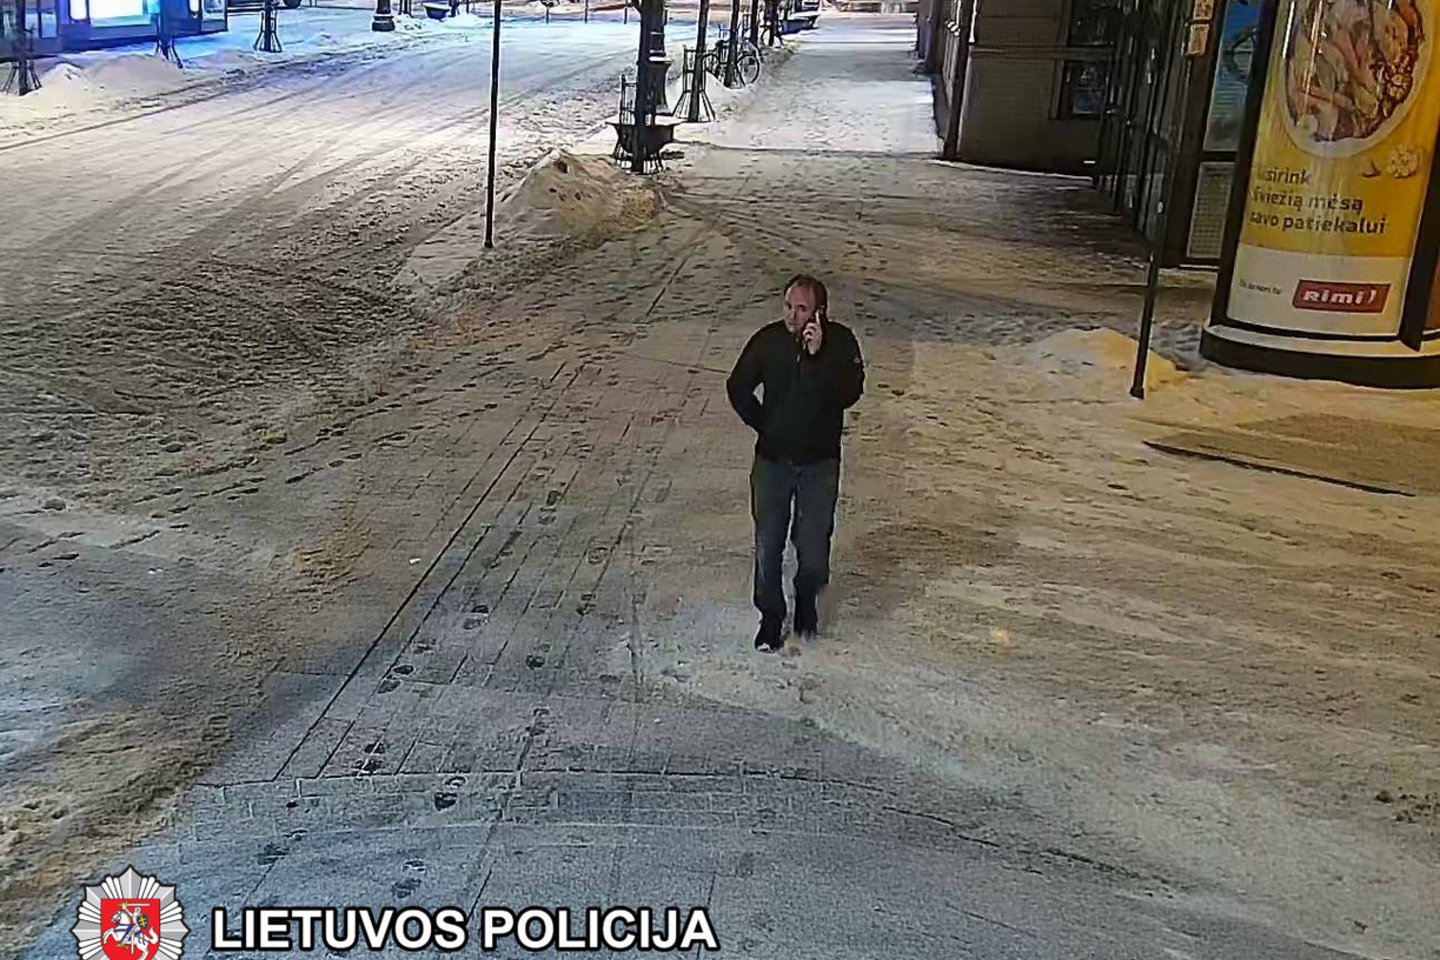  Vilniaus policija prašo atpažinti įtariamąjį.<br> Vilniaus apskrities VPK nuotr.